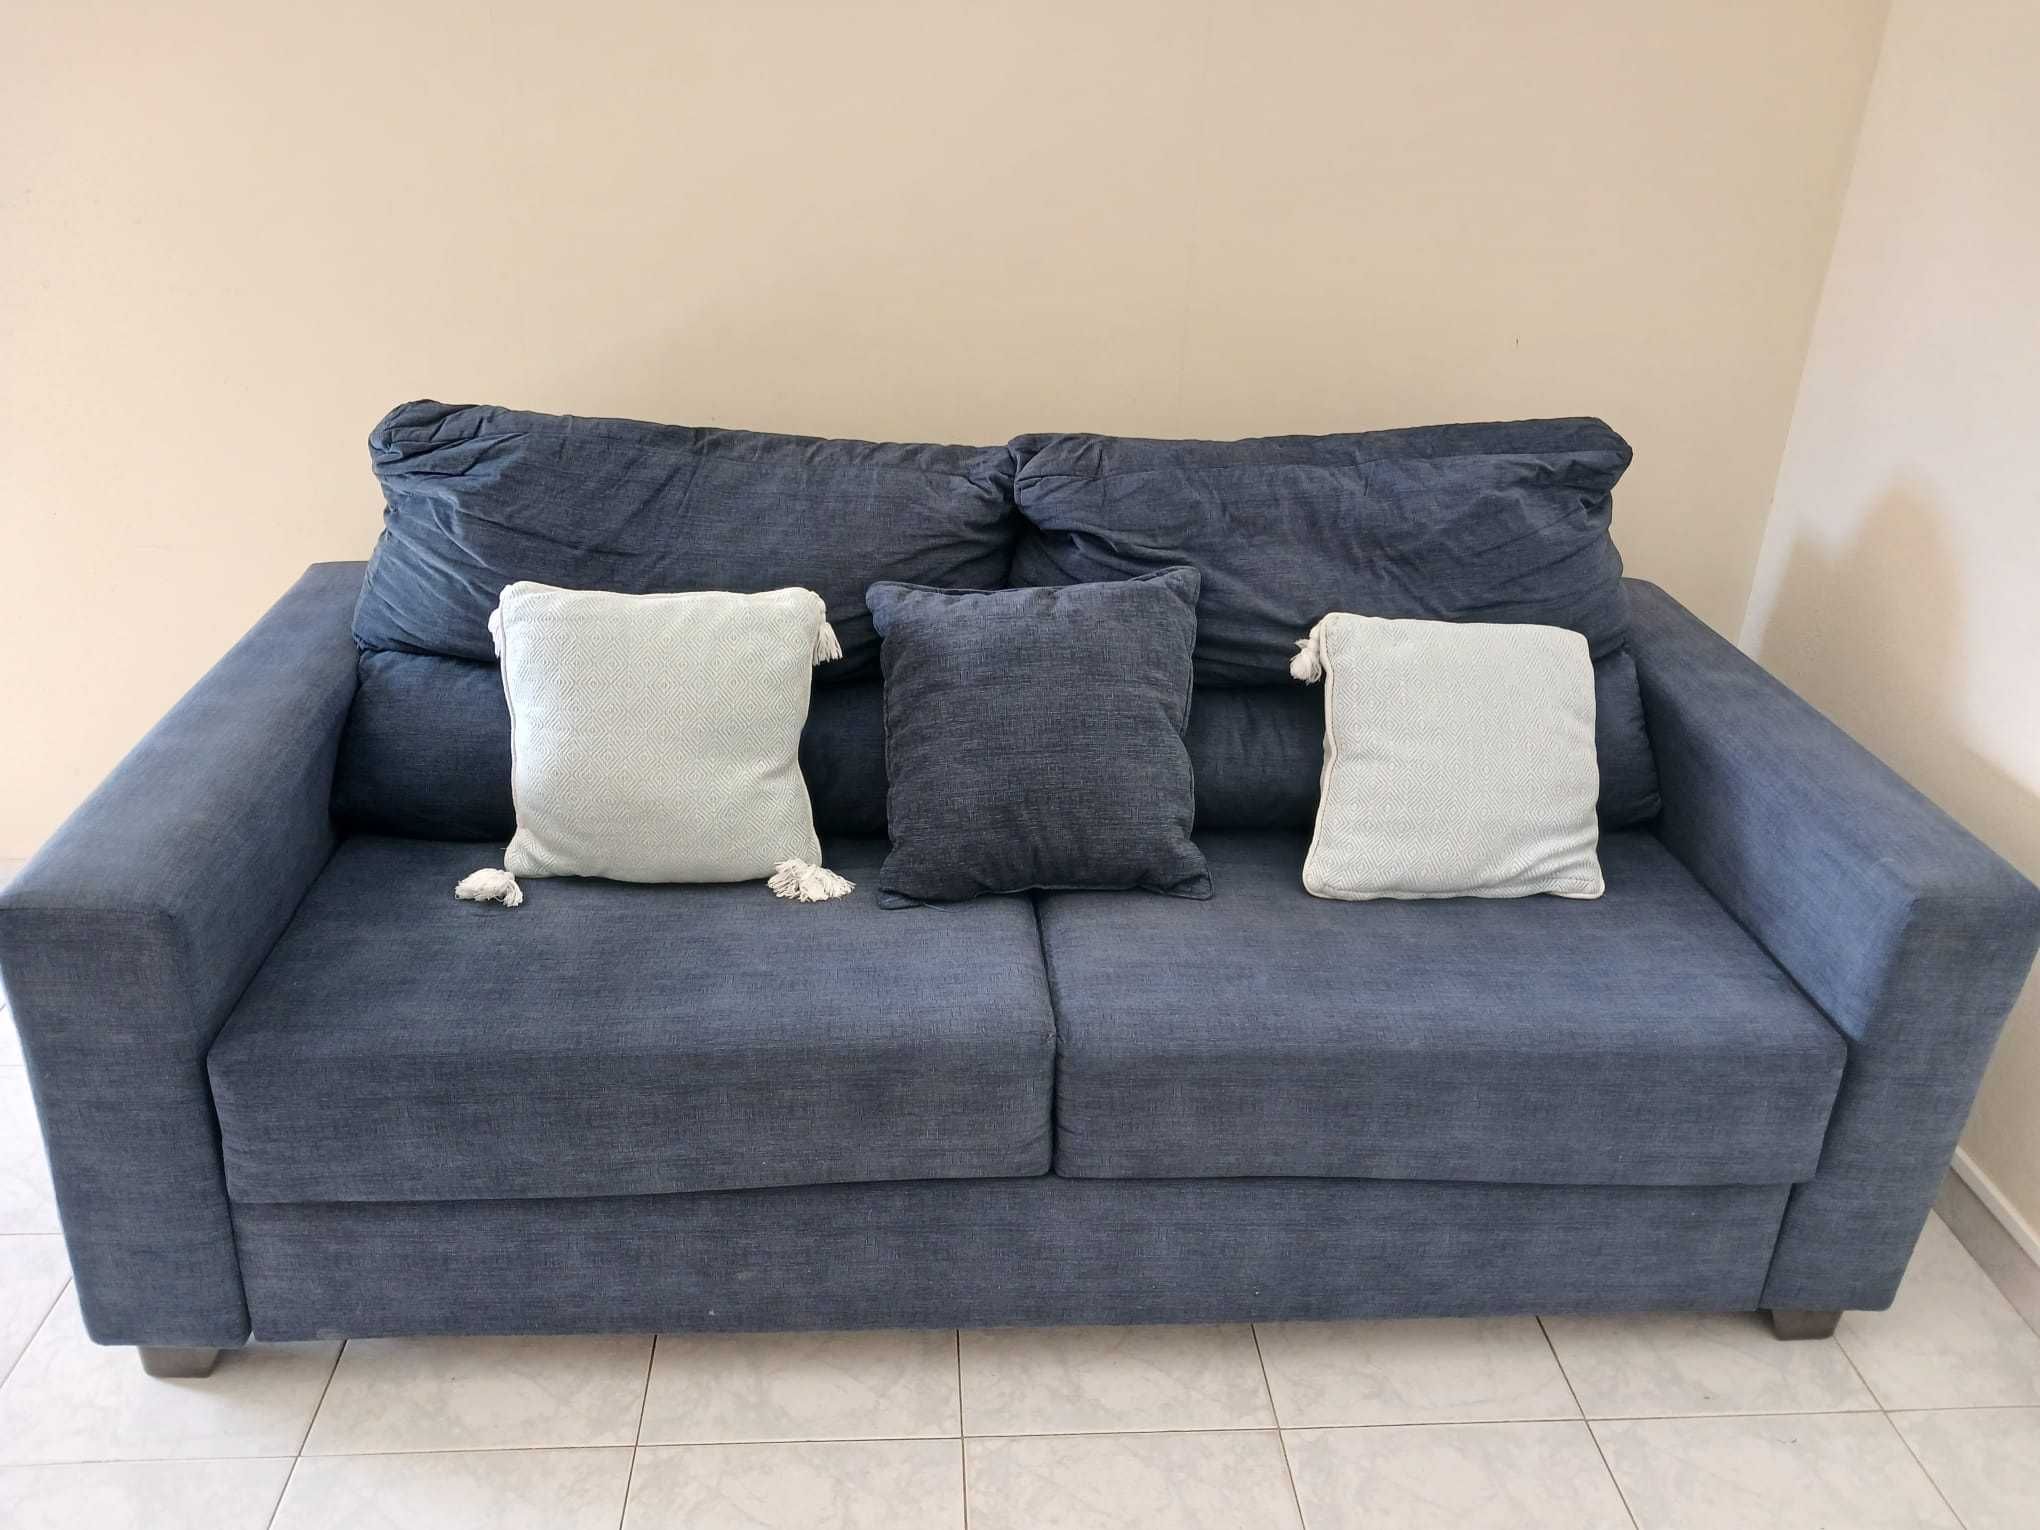 Sofa Cama, ideal para AL, em bom estado